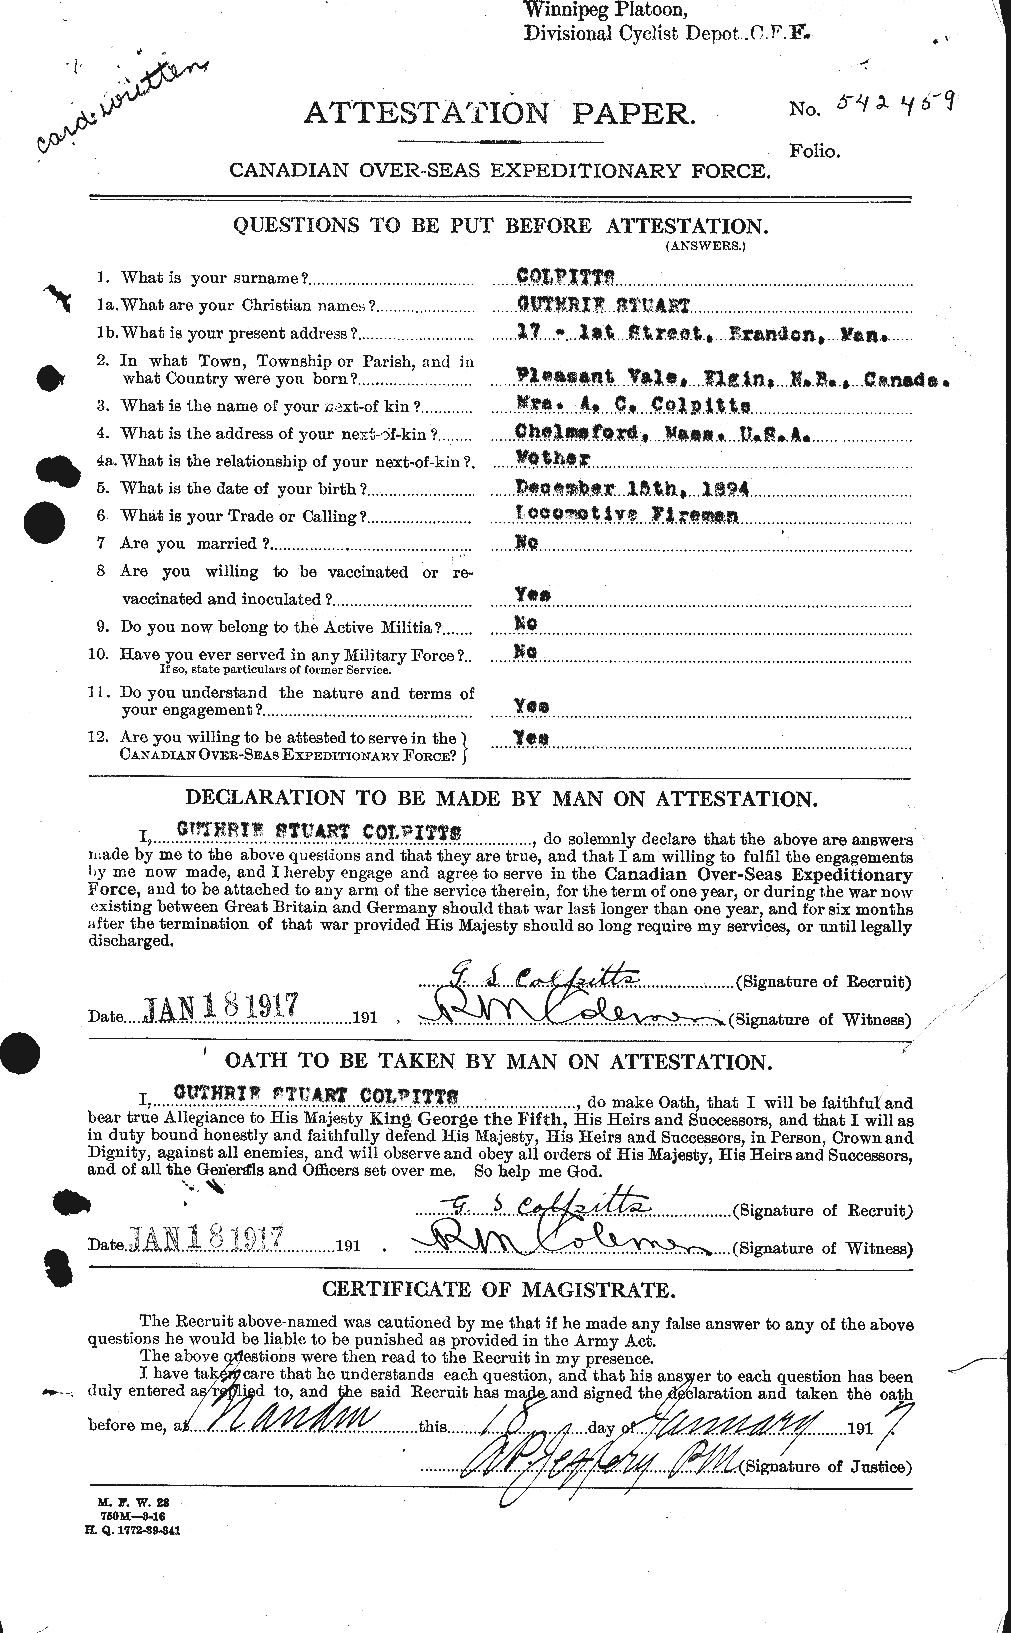 Dossiers du Personnel de la Première Guerre mondiale - CEC 067423a